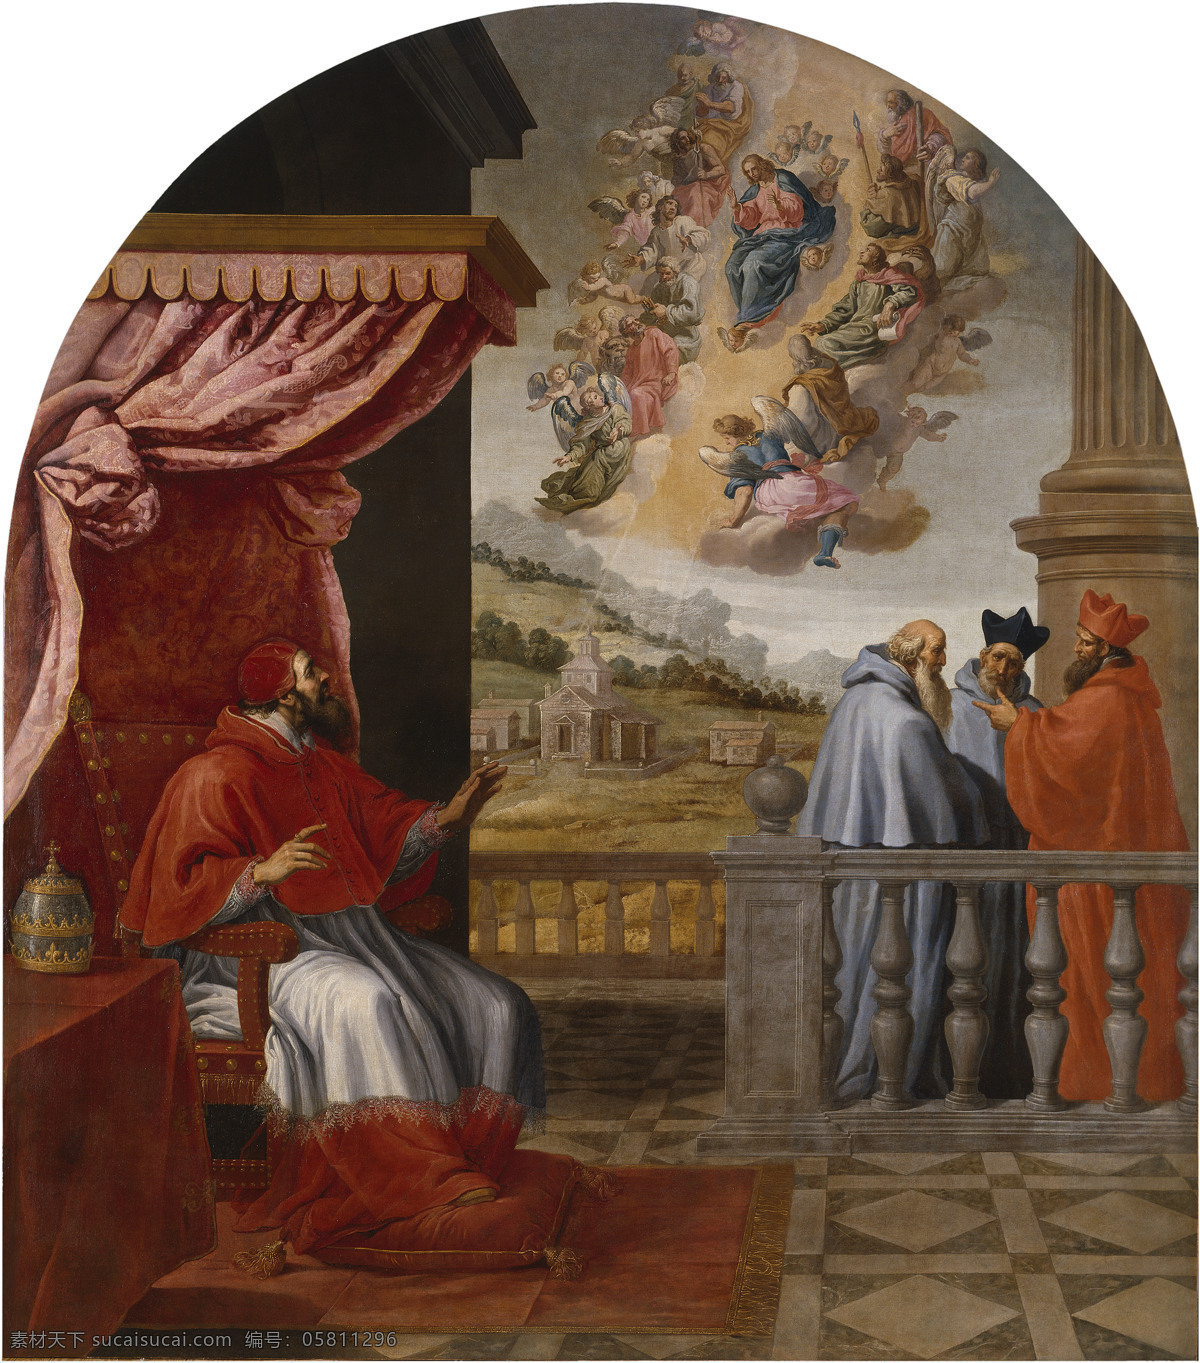 古典油画 绘画书法 文化艺术 油画 宗教油画 教皇 胜利 设计素材 模板下载 教皇的胜利 卡杜 乔维 森特 作品 罗马 维克托 三世 耶稣降临